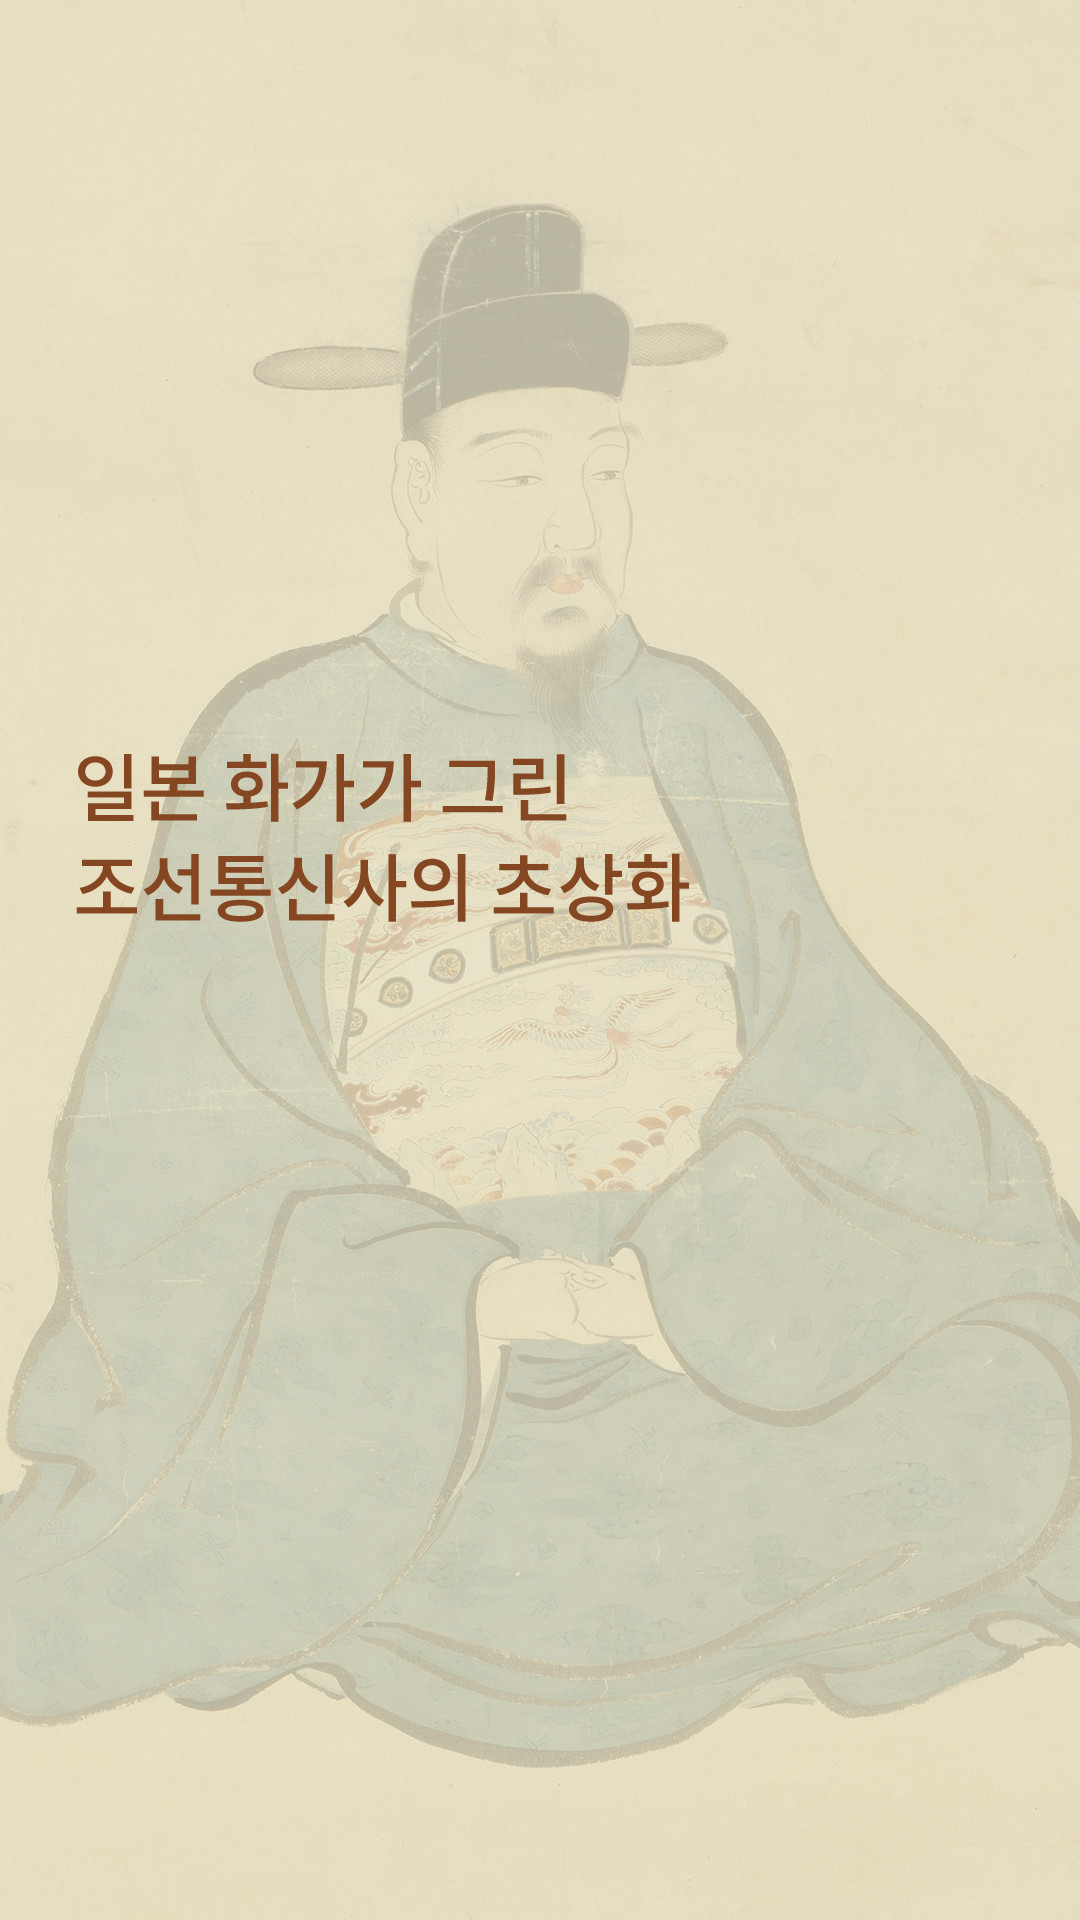 일본 화가가 그린 조선통신사의 초상화